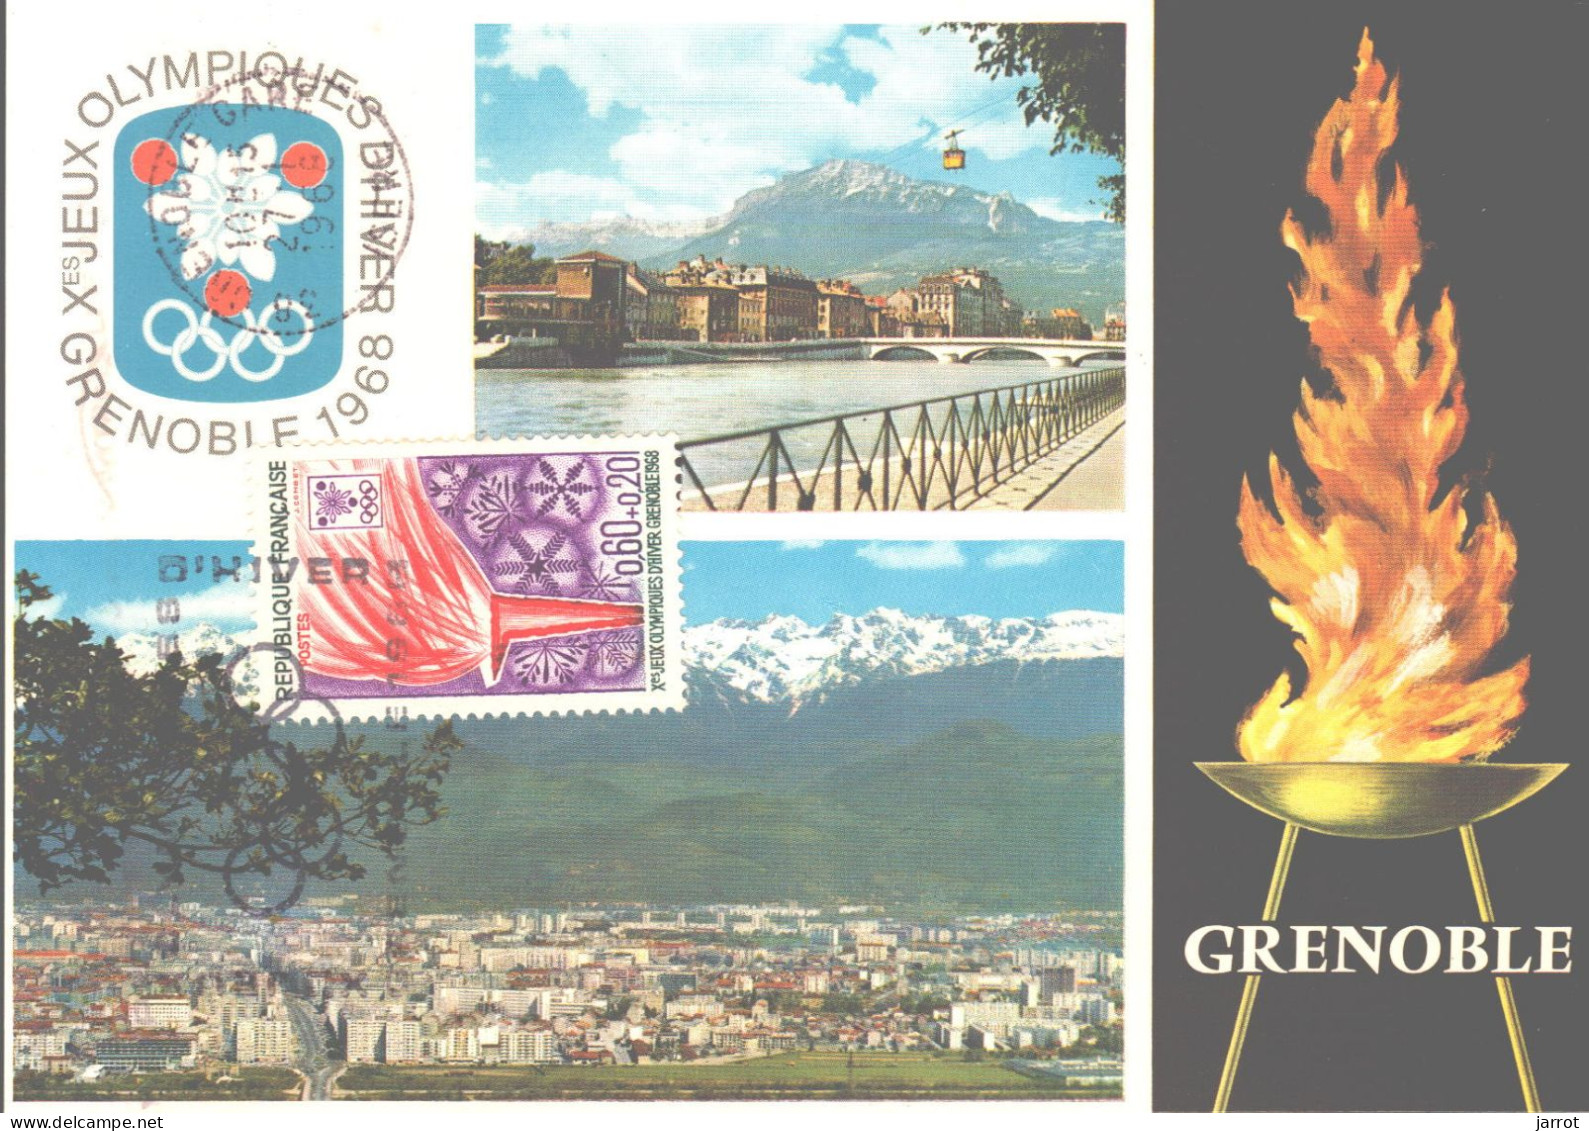 6 séries Fdc et cartes maxi JOde Grenoble (FDC,Inauguration et flamme) soit 30 souvenirs